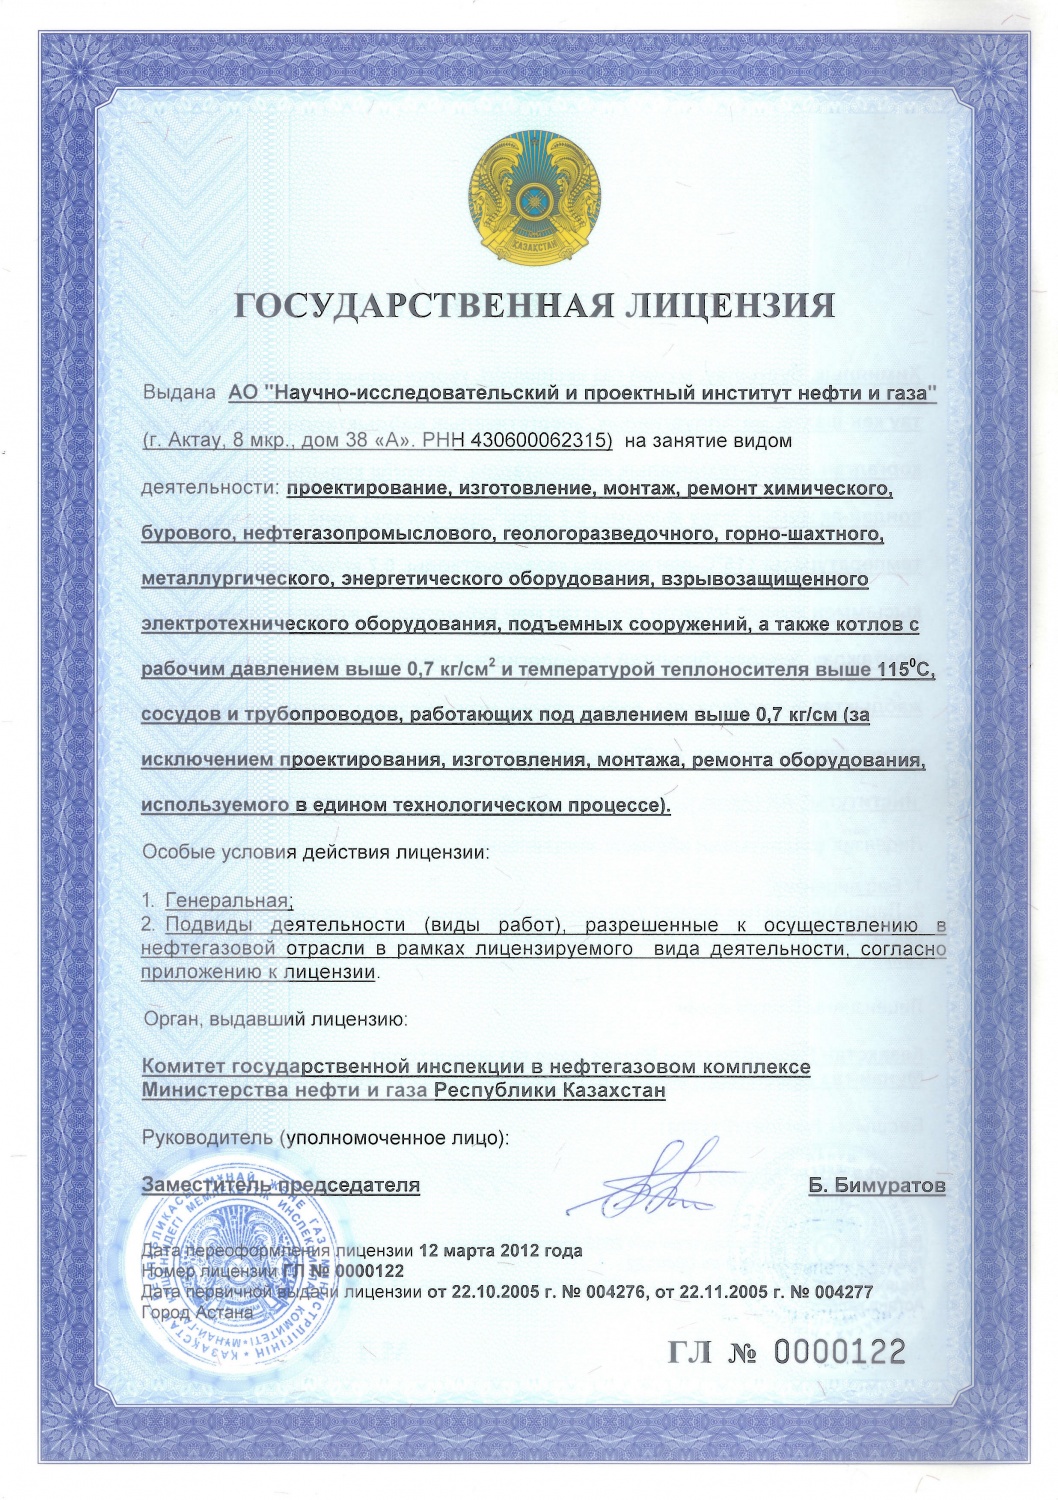 Государственная генеральная лицензия Министерства нефти и газа Республики Казахстан № 0000122 от 12 марта 2012 года